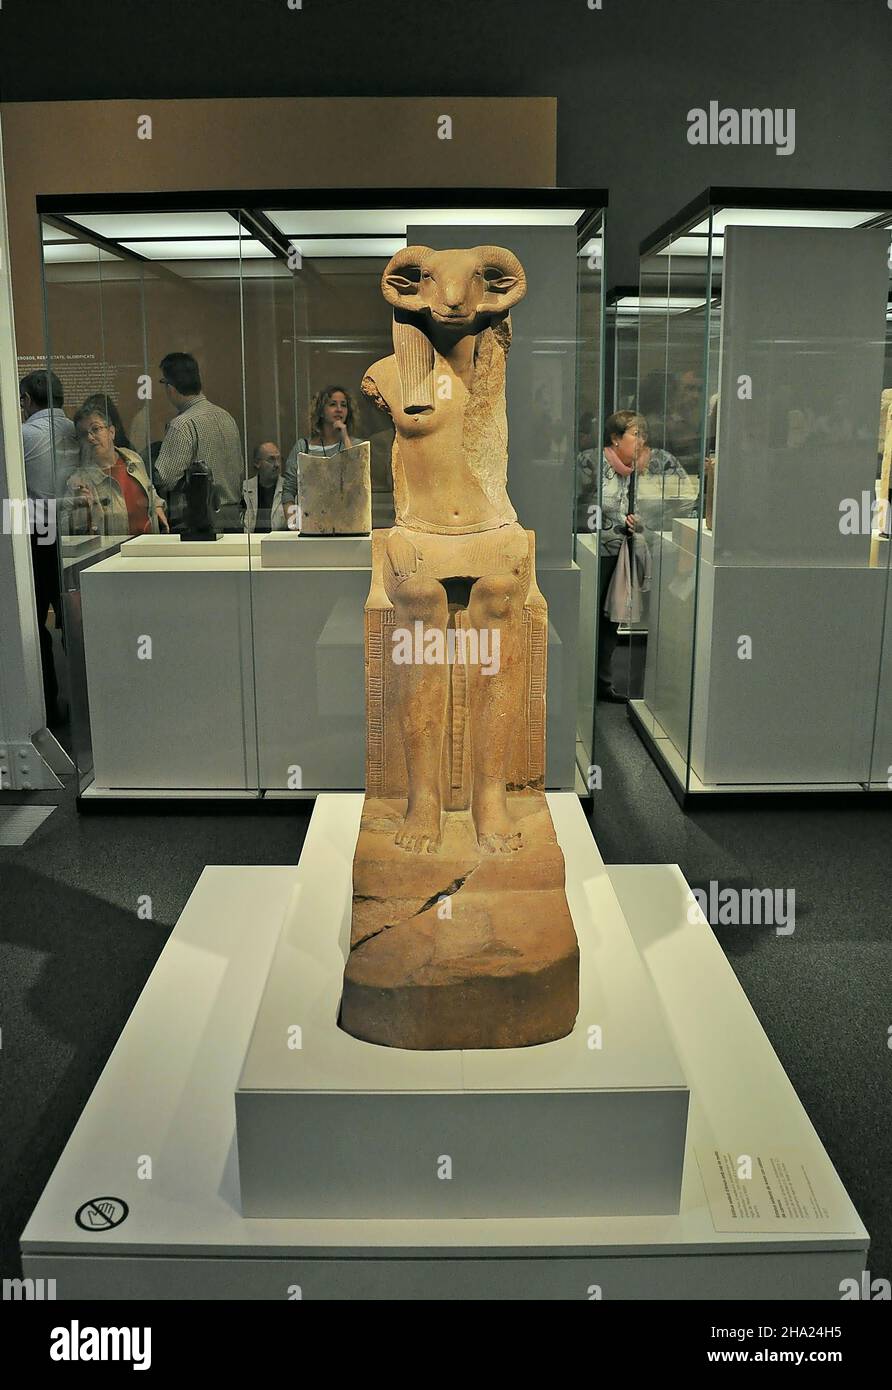 Mostra di animali e faraoni al museo Caixaforum di Barcellona, Catalogna, Spagna Foto Stock